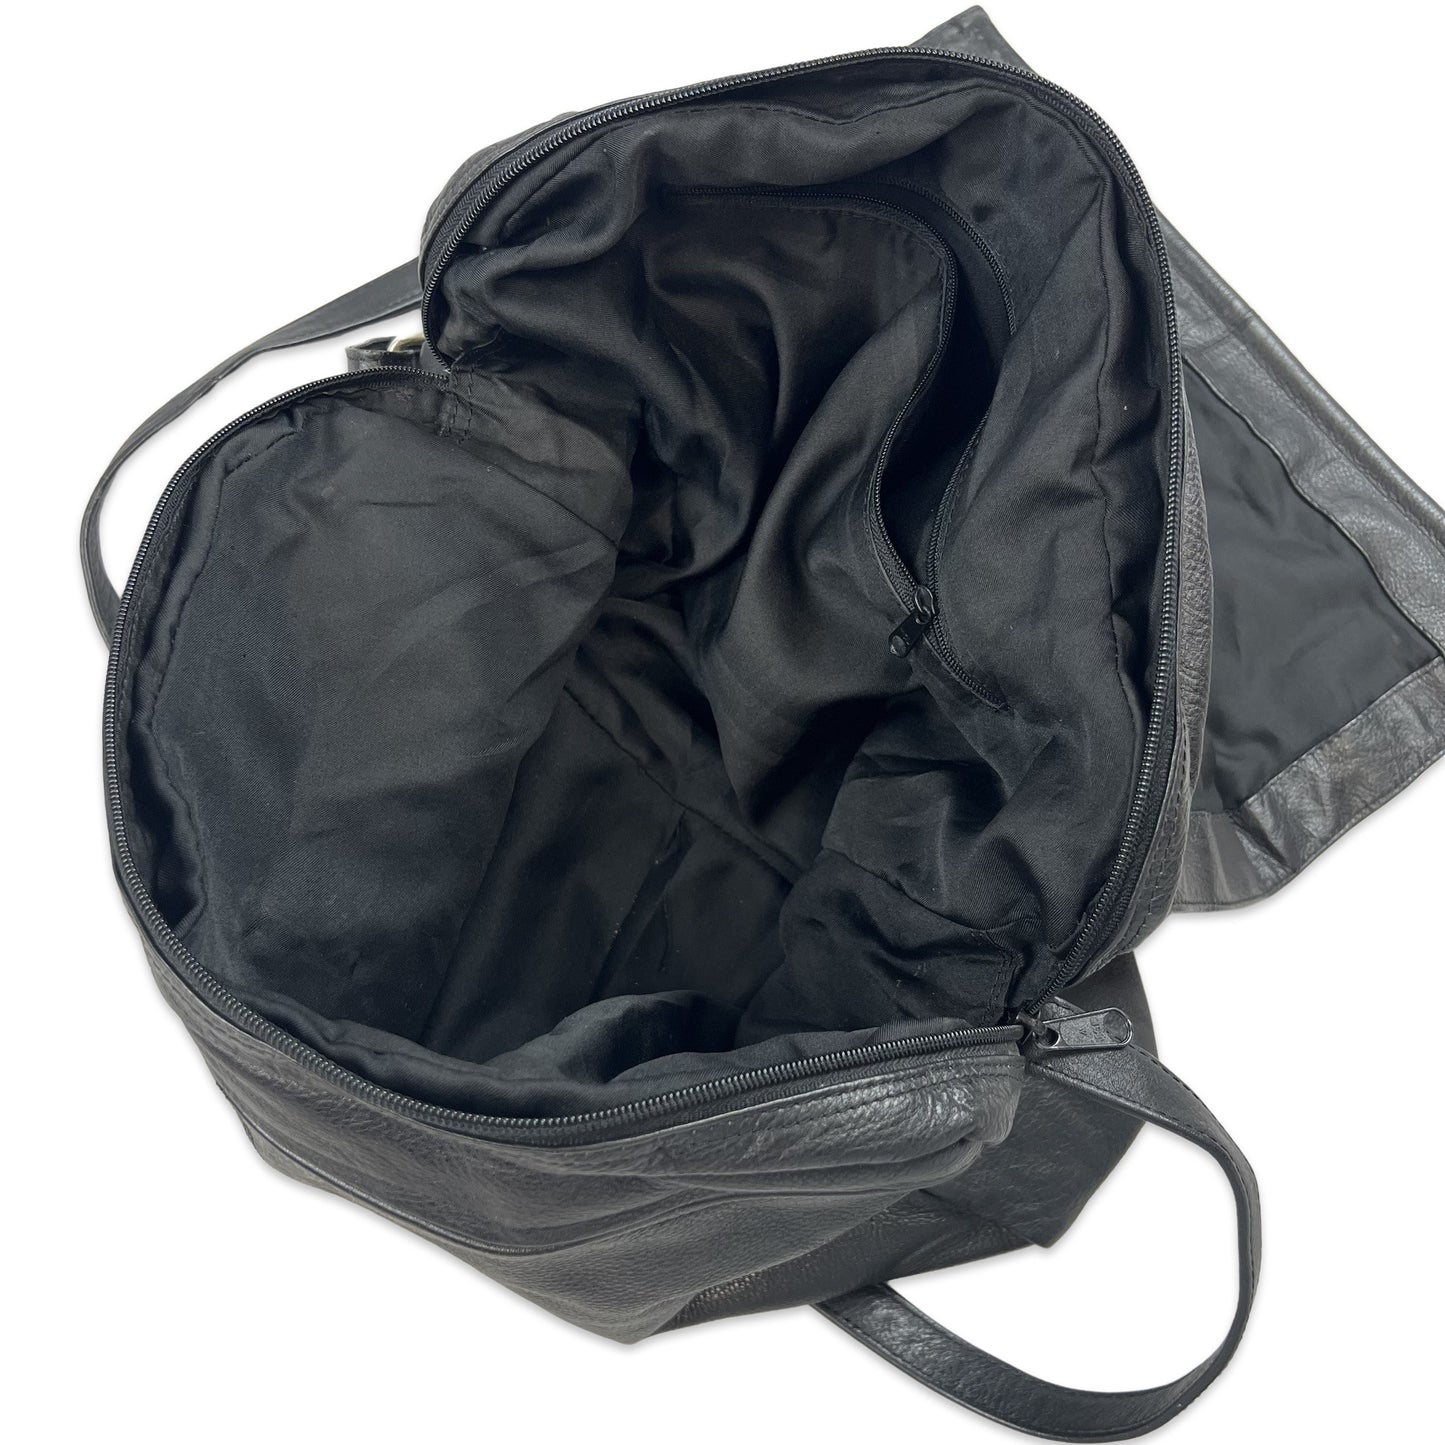 Vintage 90s Black Leather Satchel Messenger Bag